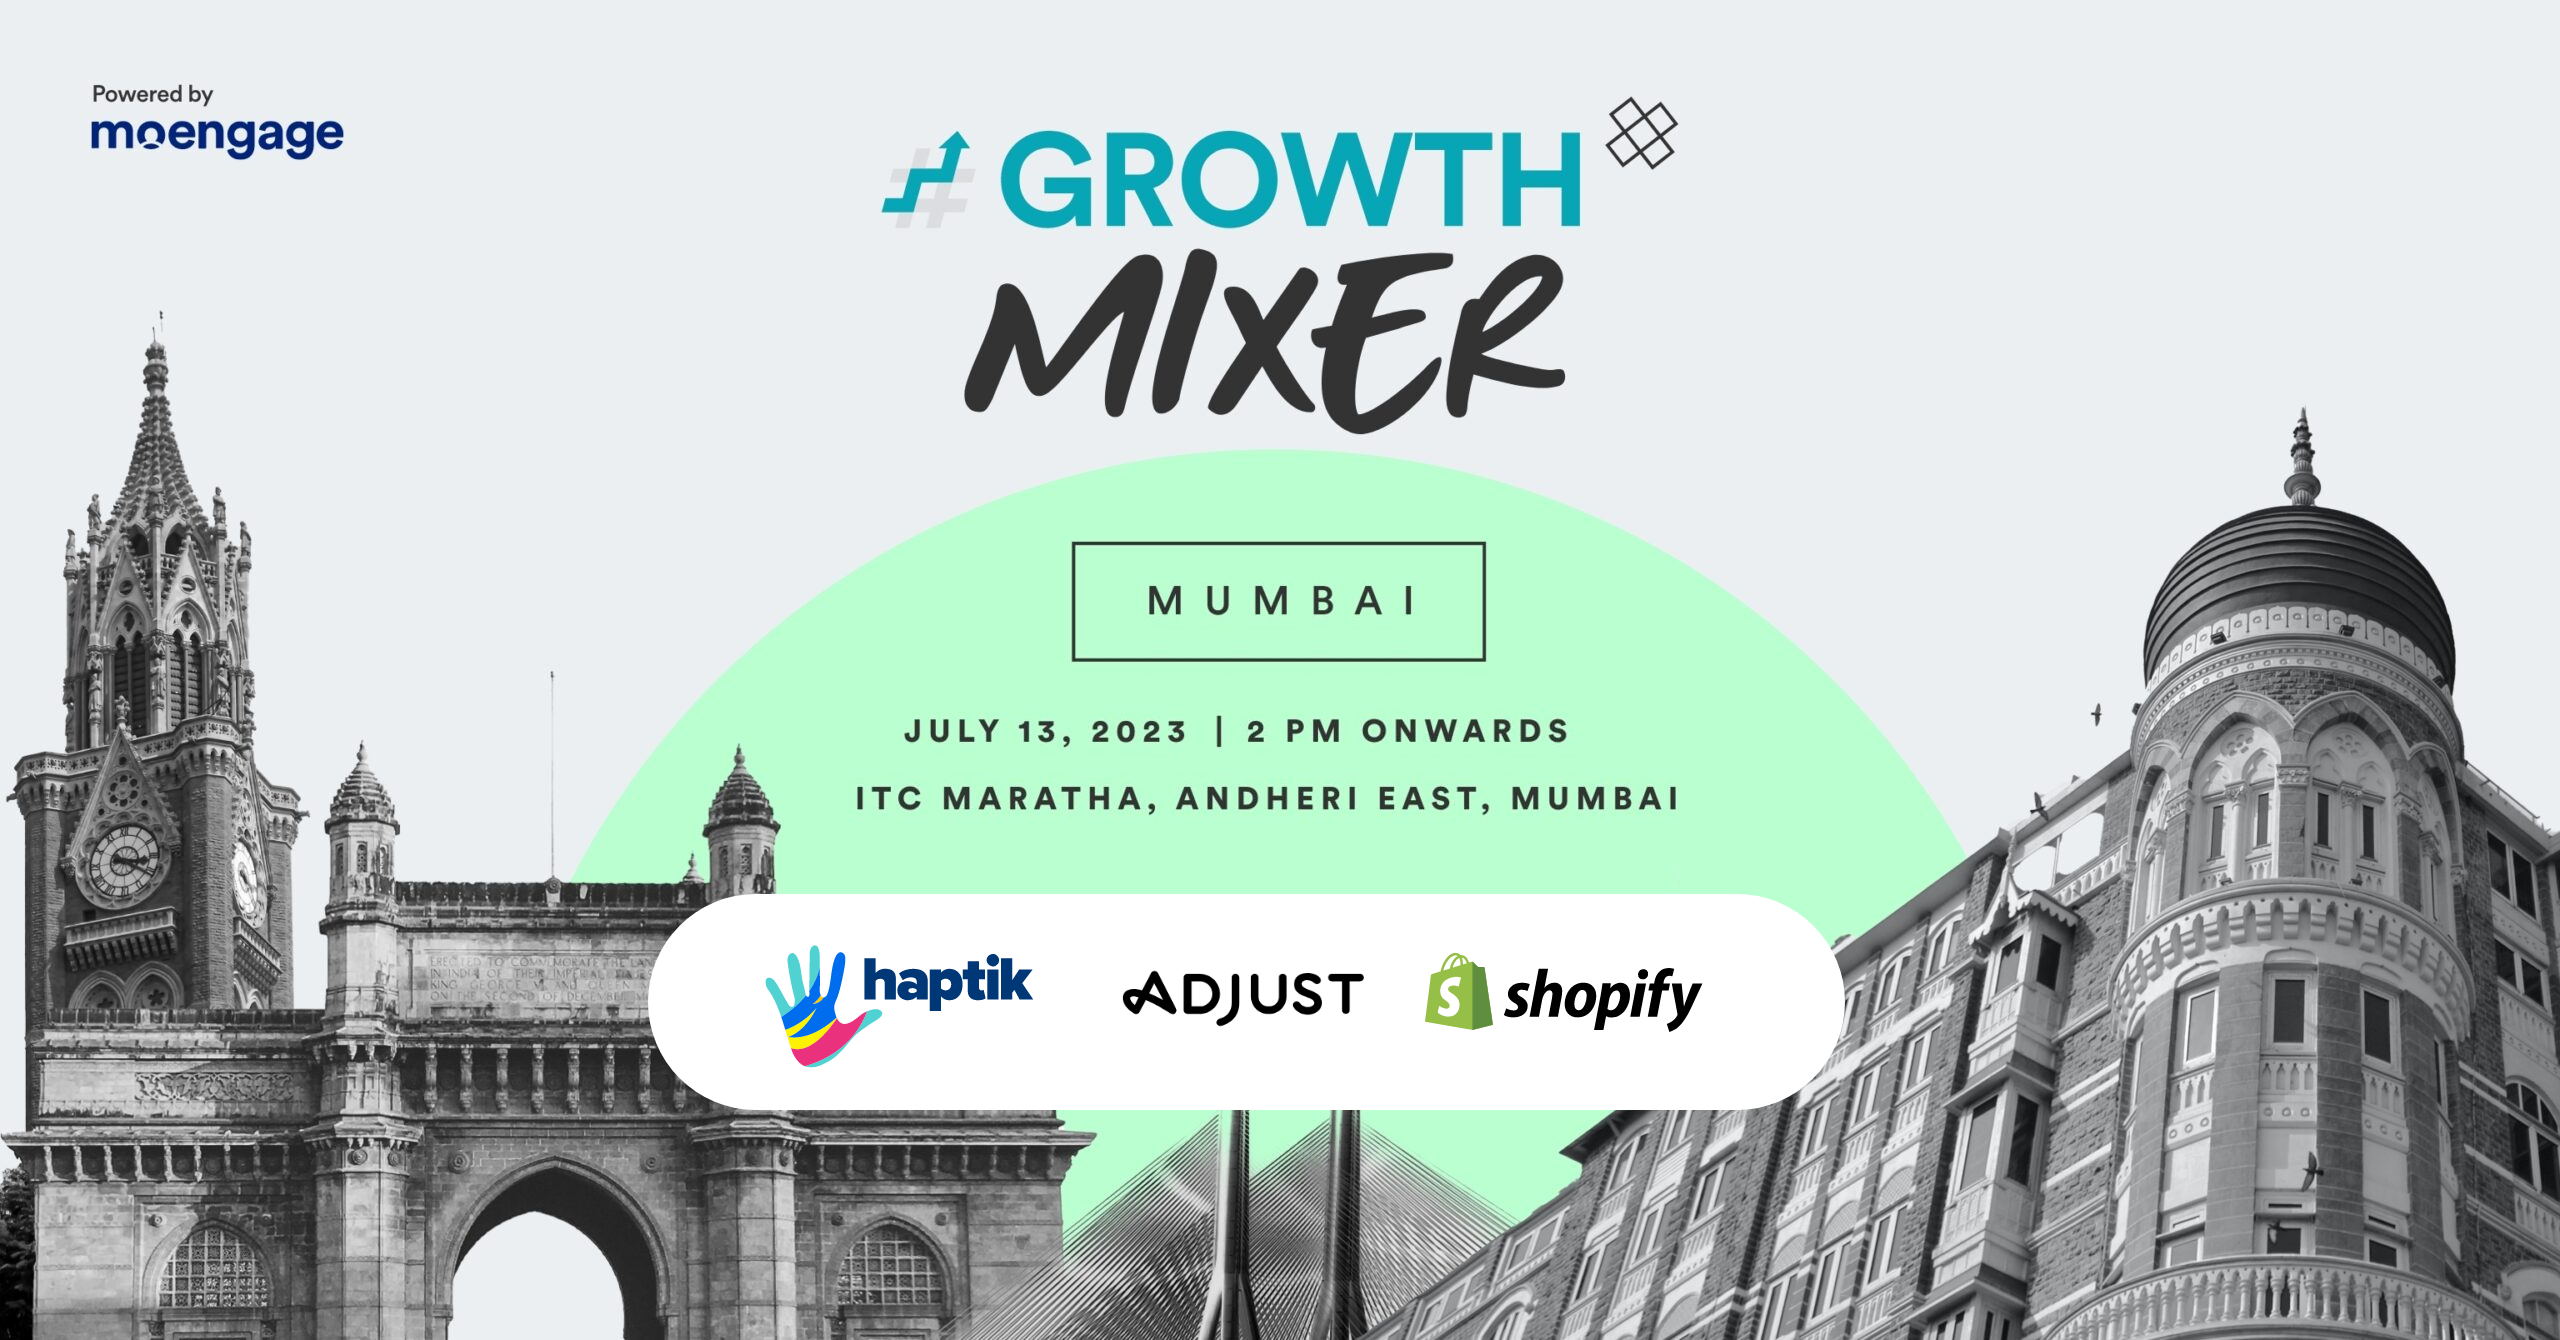 #GROWTH Mixer 2023 Mumbai